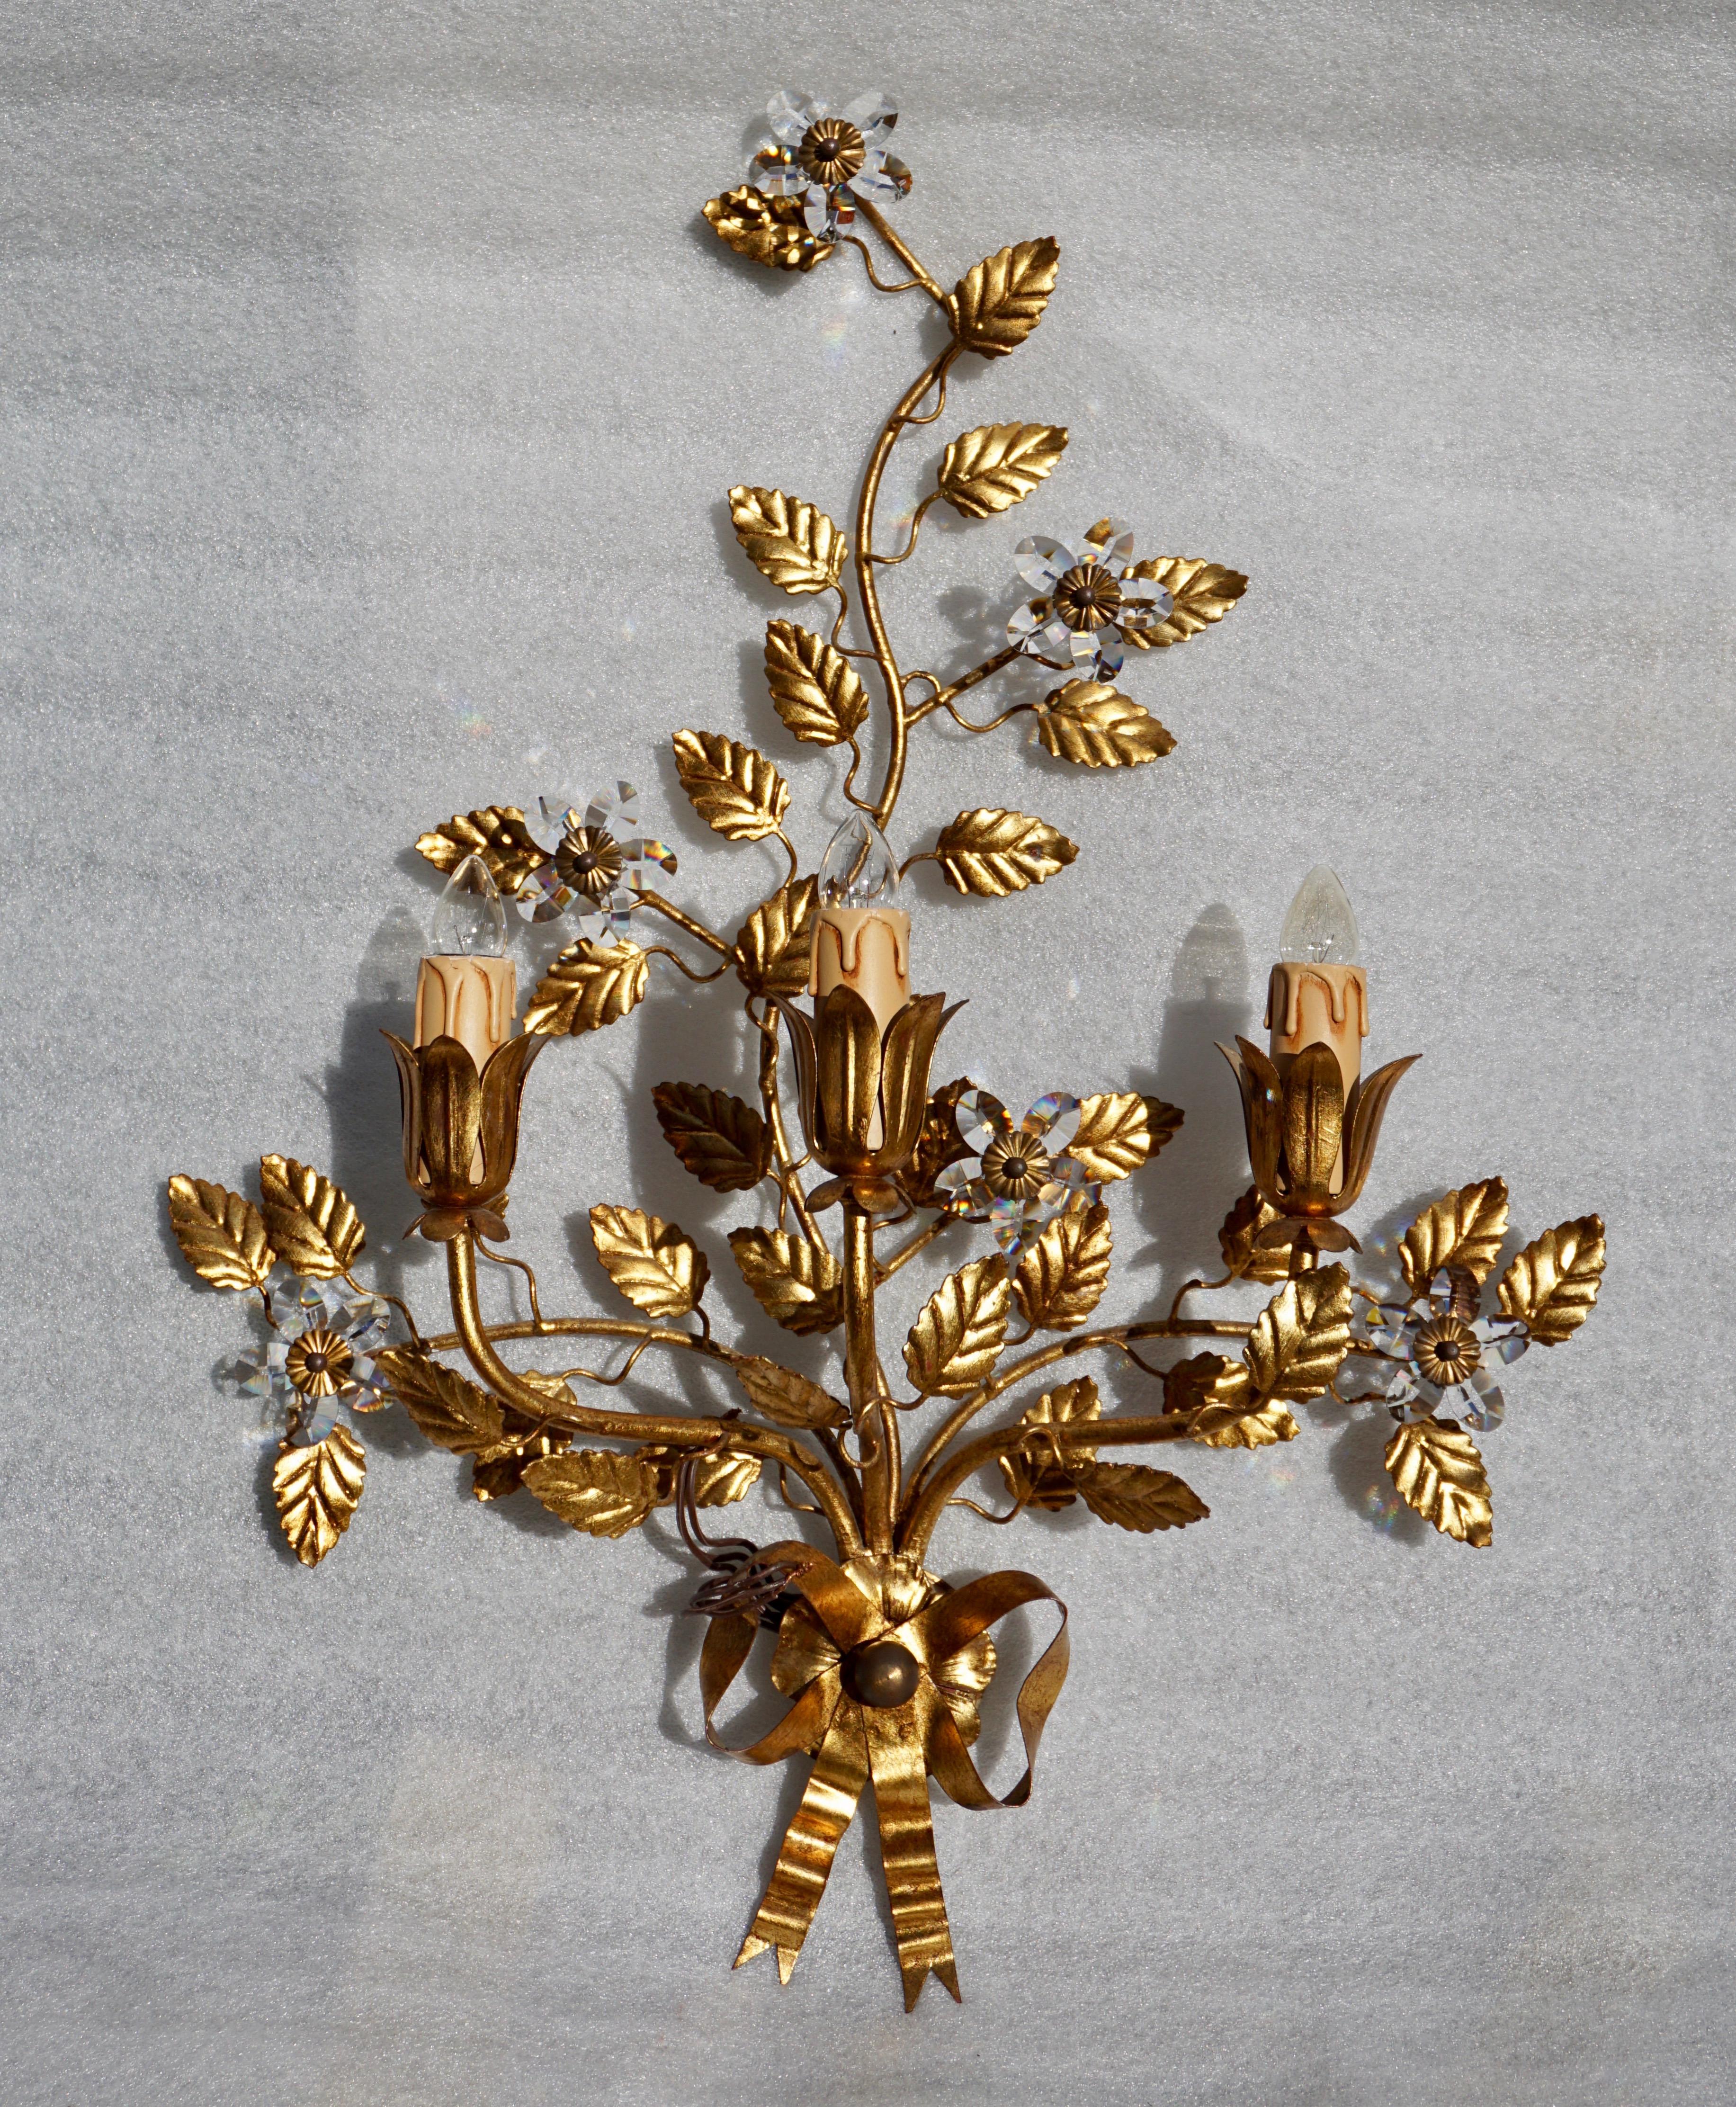 Vergoldete Leuchte aus Messing mit Kristallblumen. Italien.
Maße: Höhe 60 cm.
Breite 45 cm.
Tiefe 17 cm.
Baum E14 Glühbirnen.
 